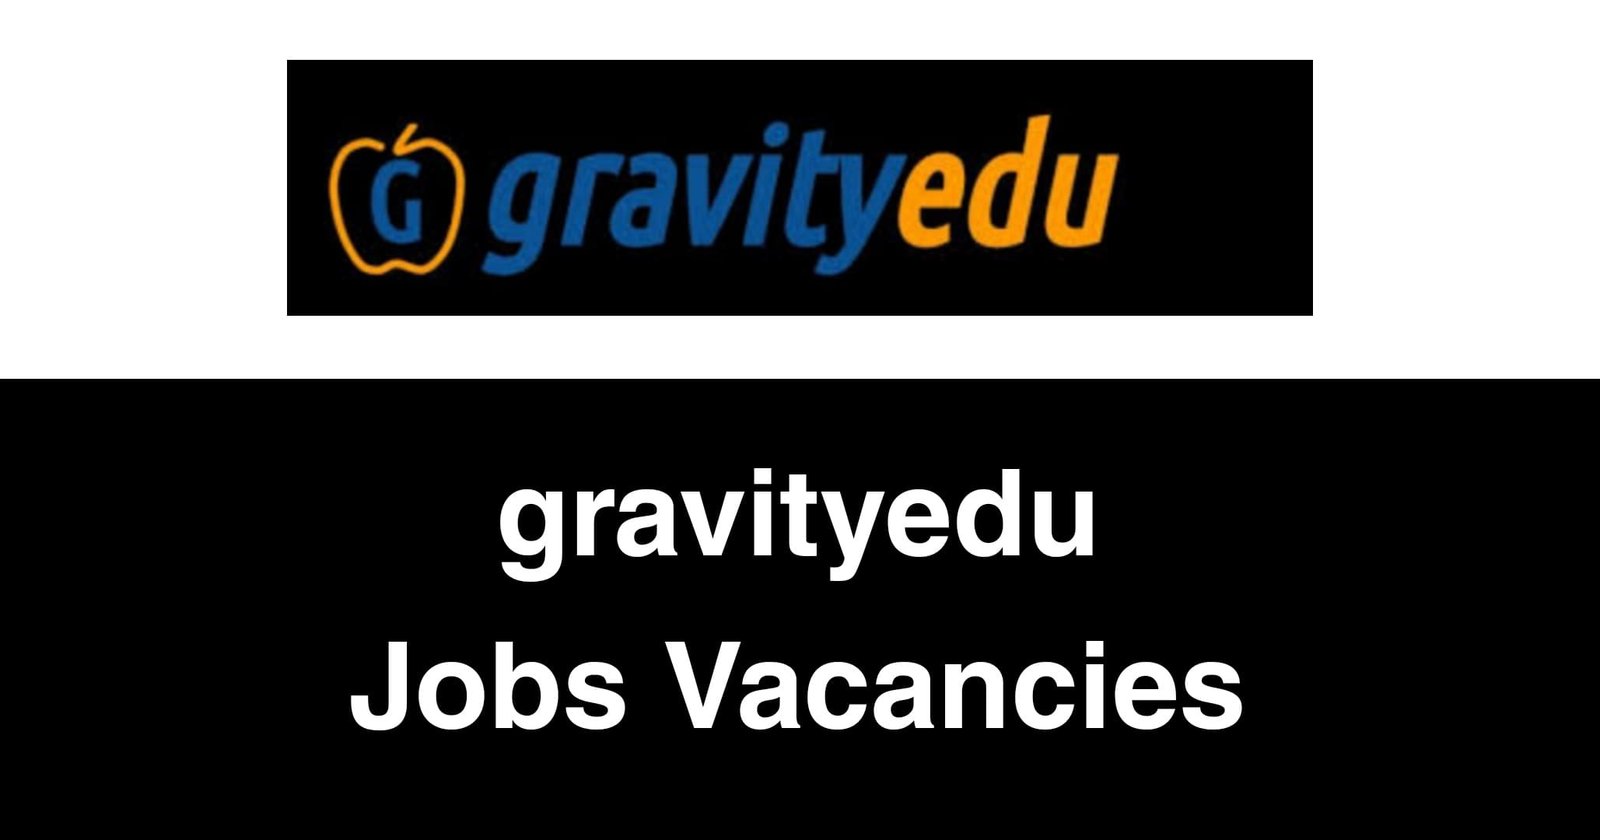 Gravityedu Jobs Vacancies